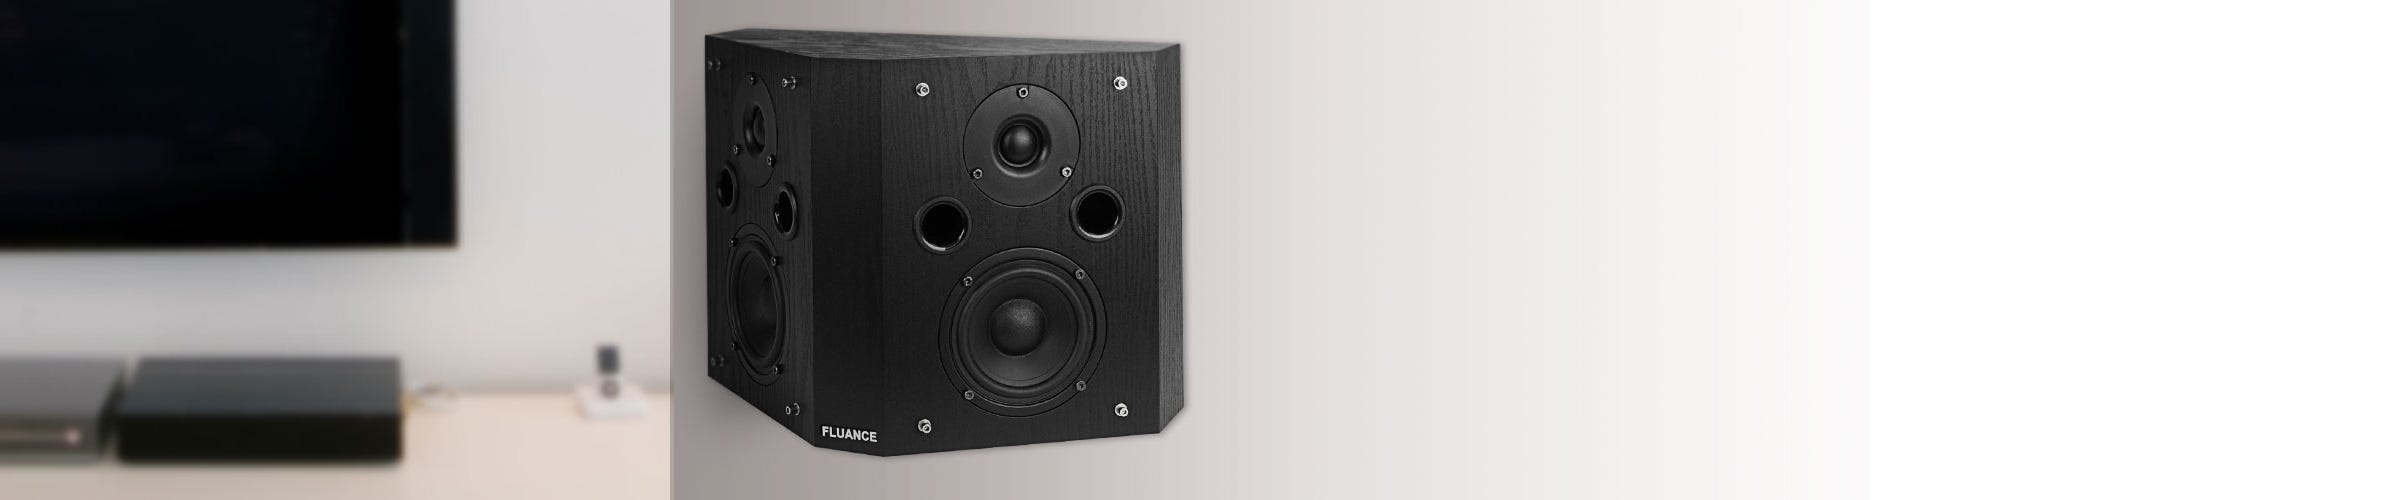 SXBP Bipolar Surround Sound Speakers Premium Features